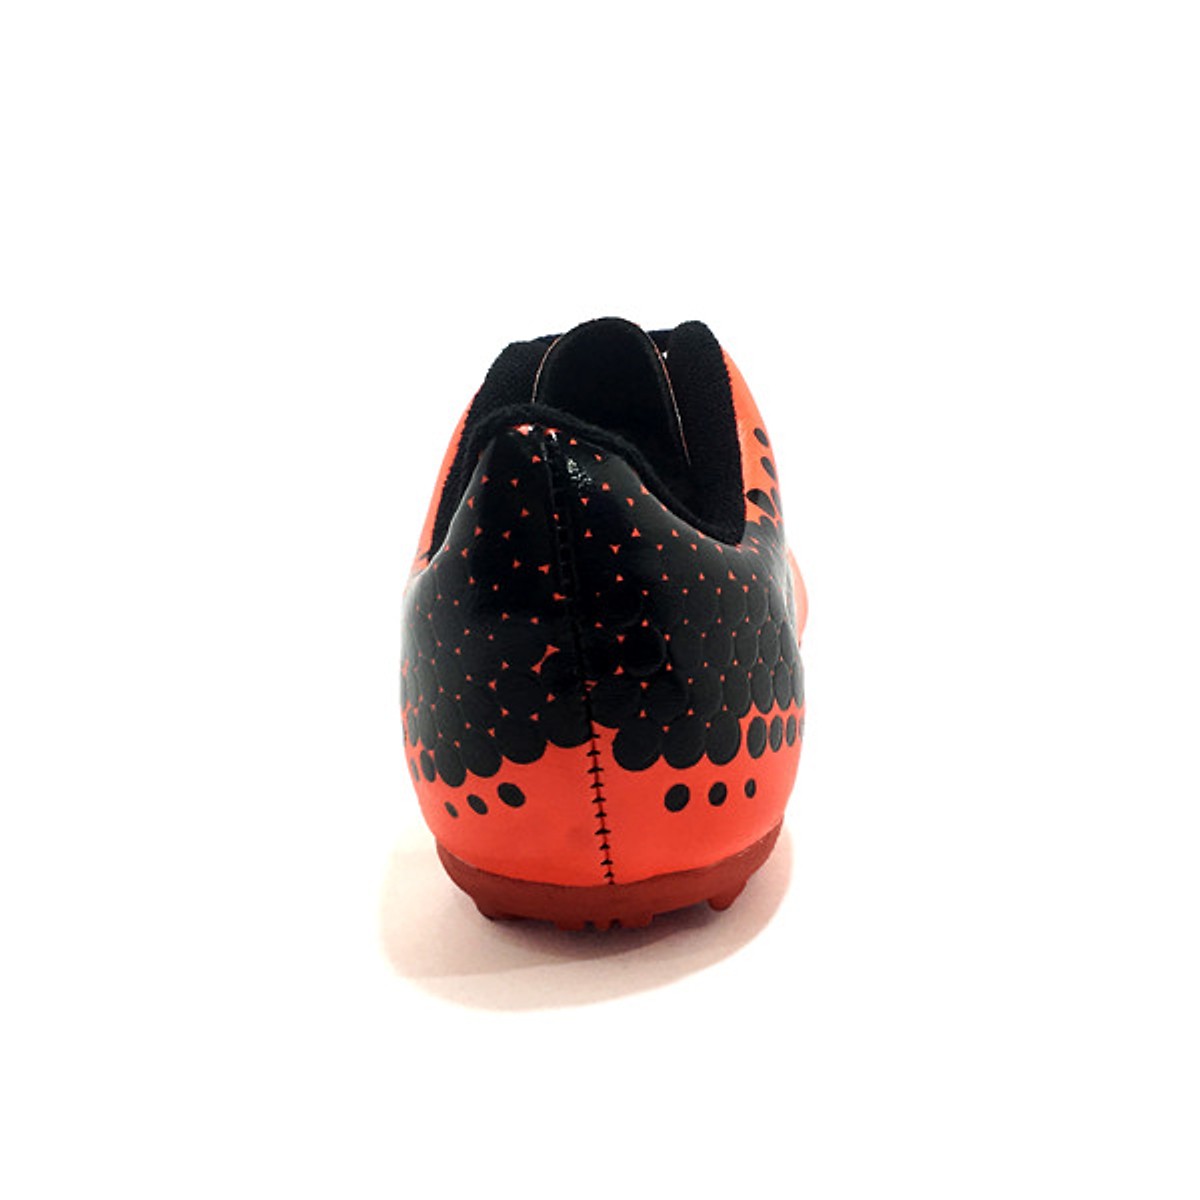 Giày đá bóng trẻ em sân cỏ nhân tạo CoaVu Dragon (màu cam)